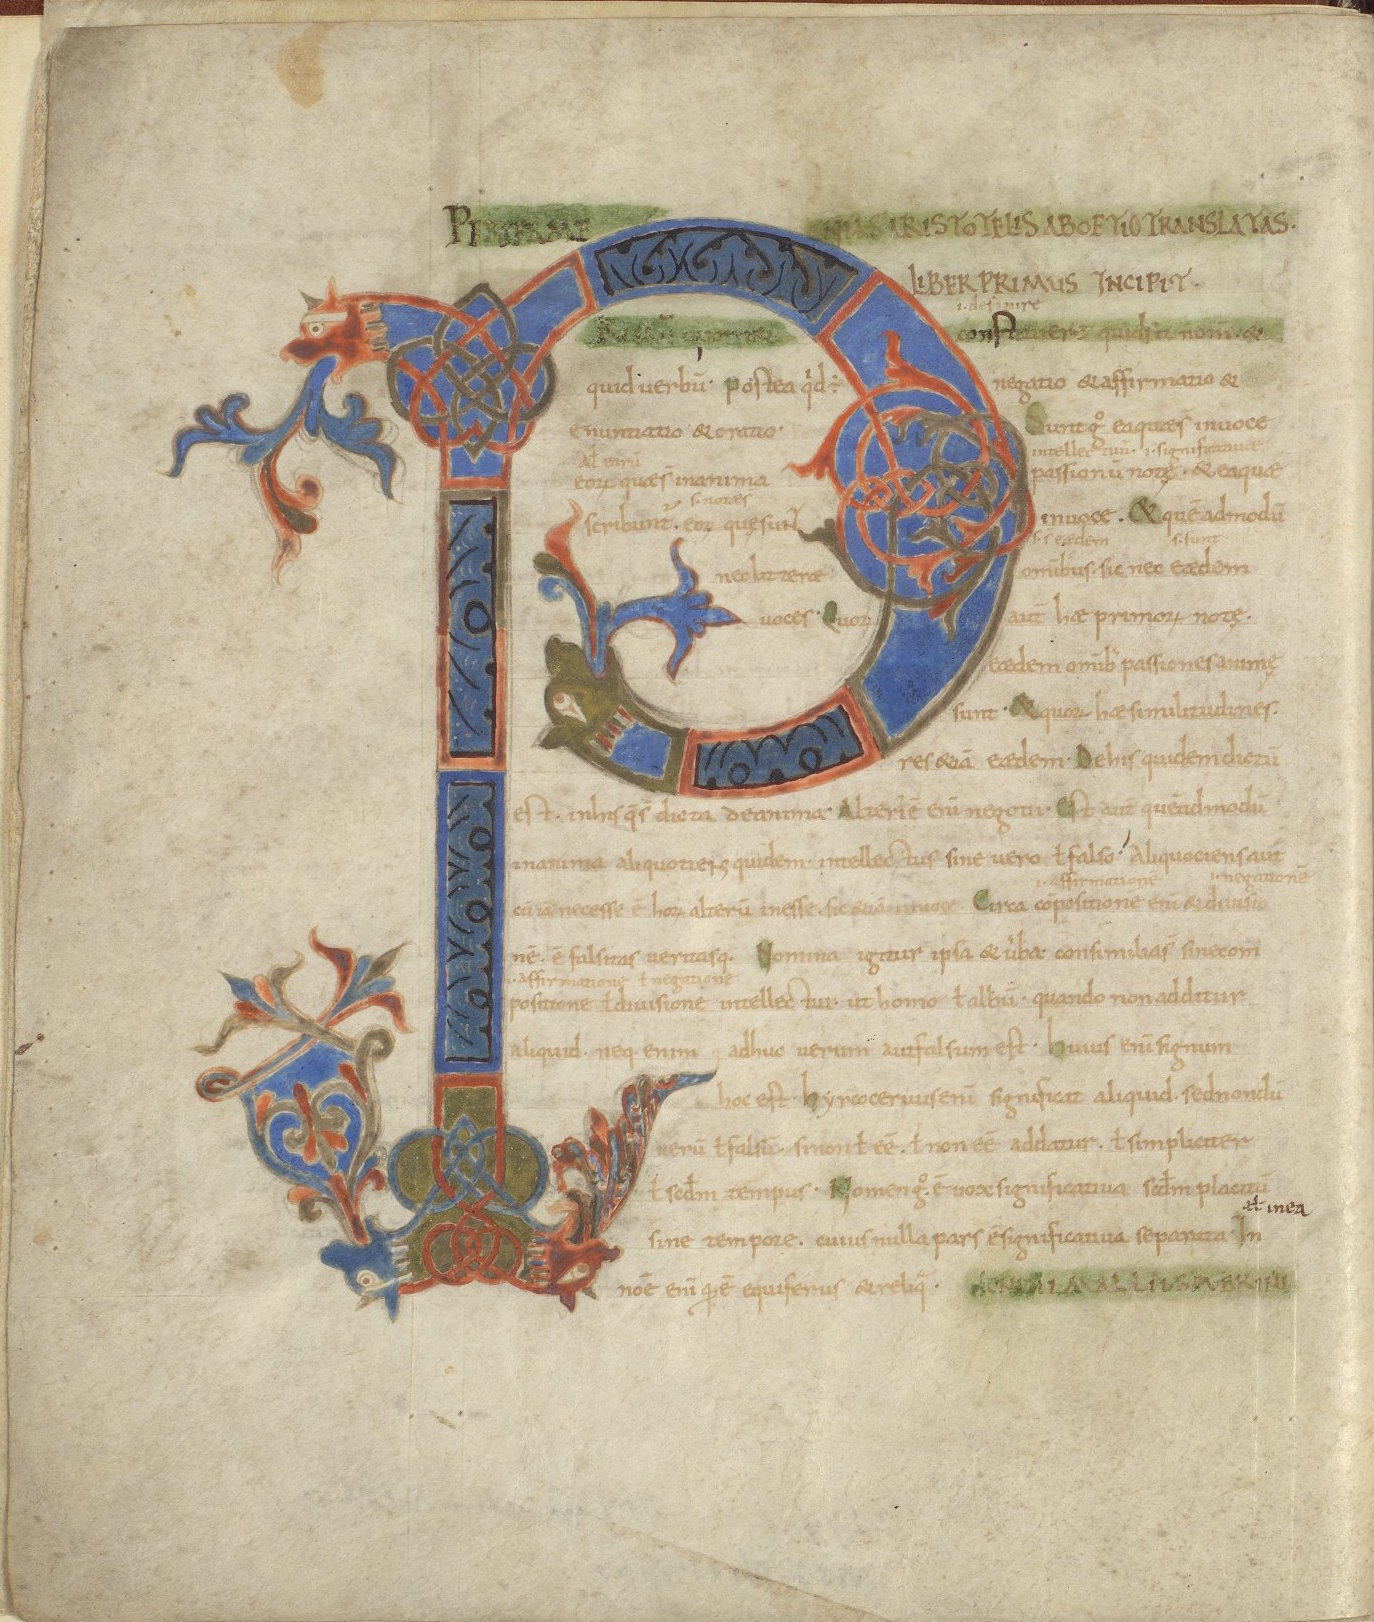 LJS 101, Periermenias Aristotelis, folio 1v.